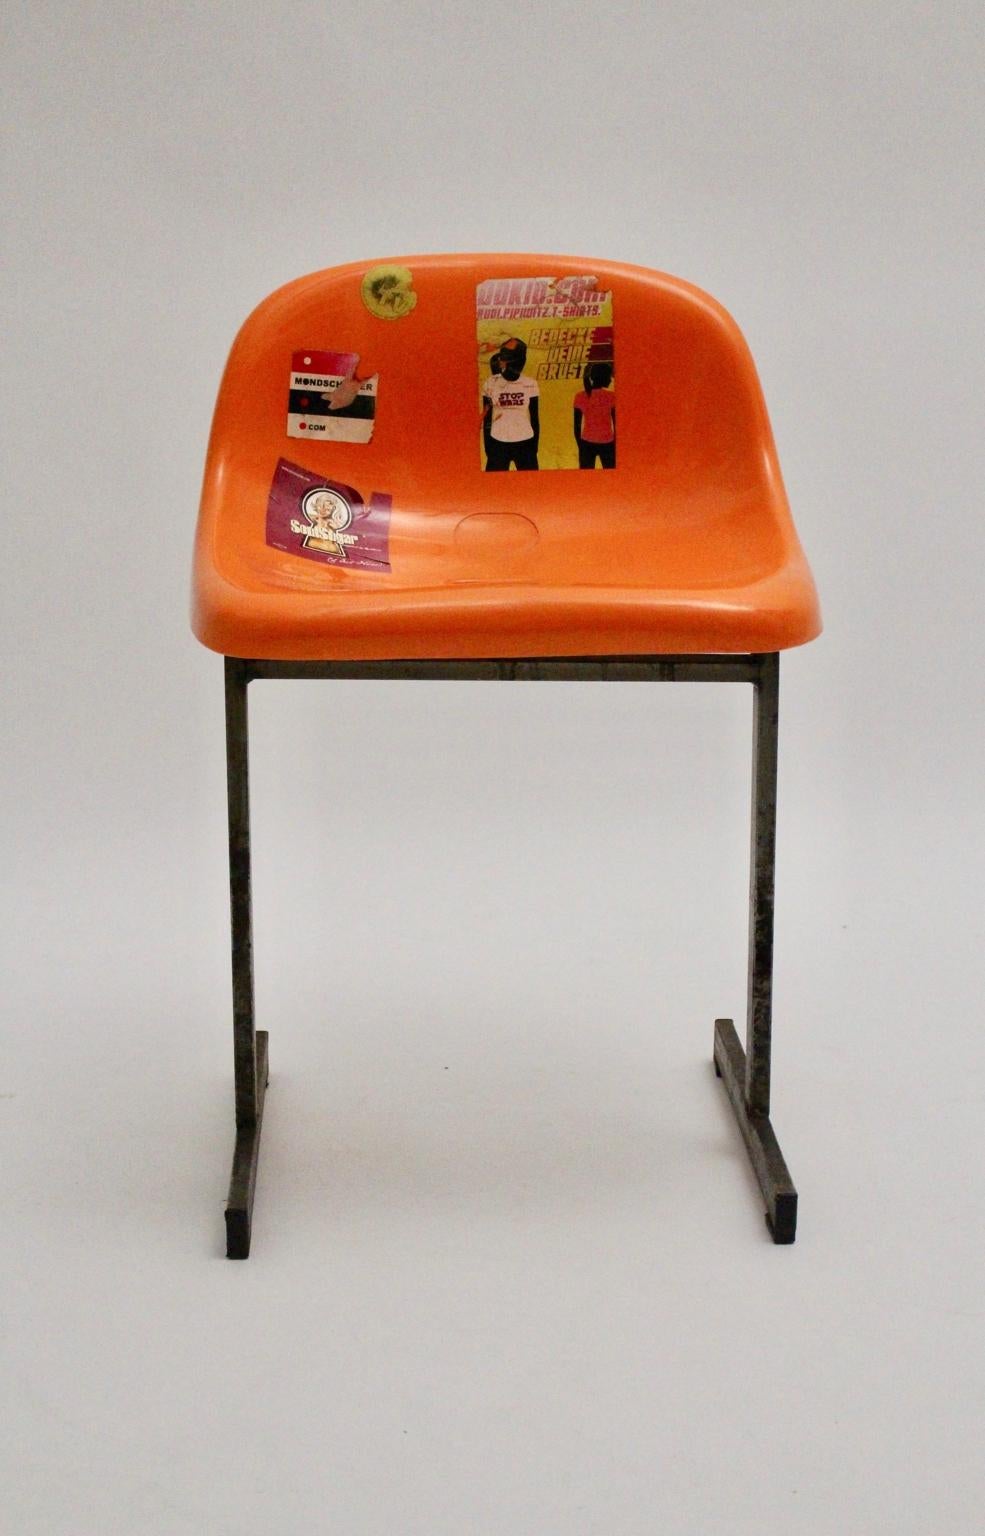 Pop Art Vintage-Stuhl aus Metall aus einem Sportstadion in Wien mit einem Stahlrahmen und einer orangefarbenen Kunststoffsitzschale. Die Sitzschale ist mit vielen Aufklebern beklebt.
Stabil und robust, während die Oberfläche des Stuhls